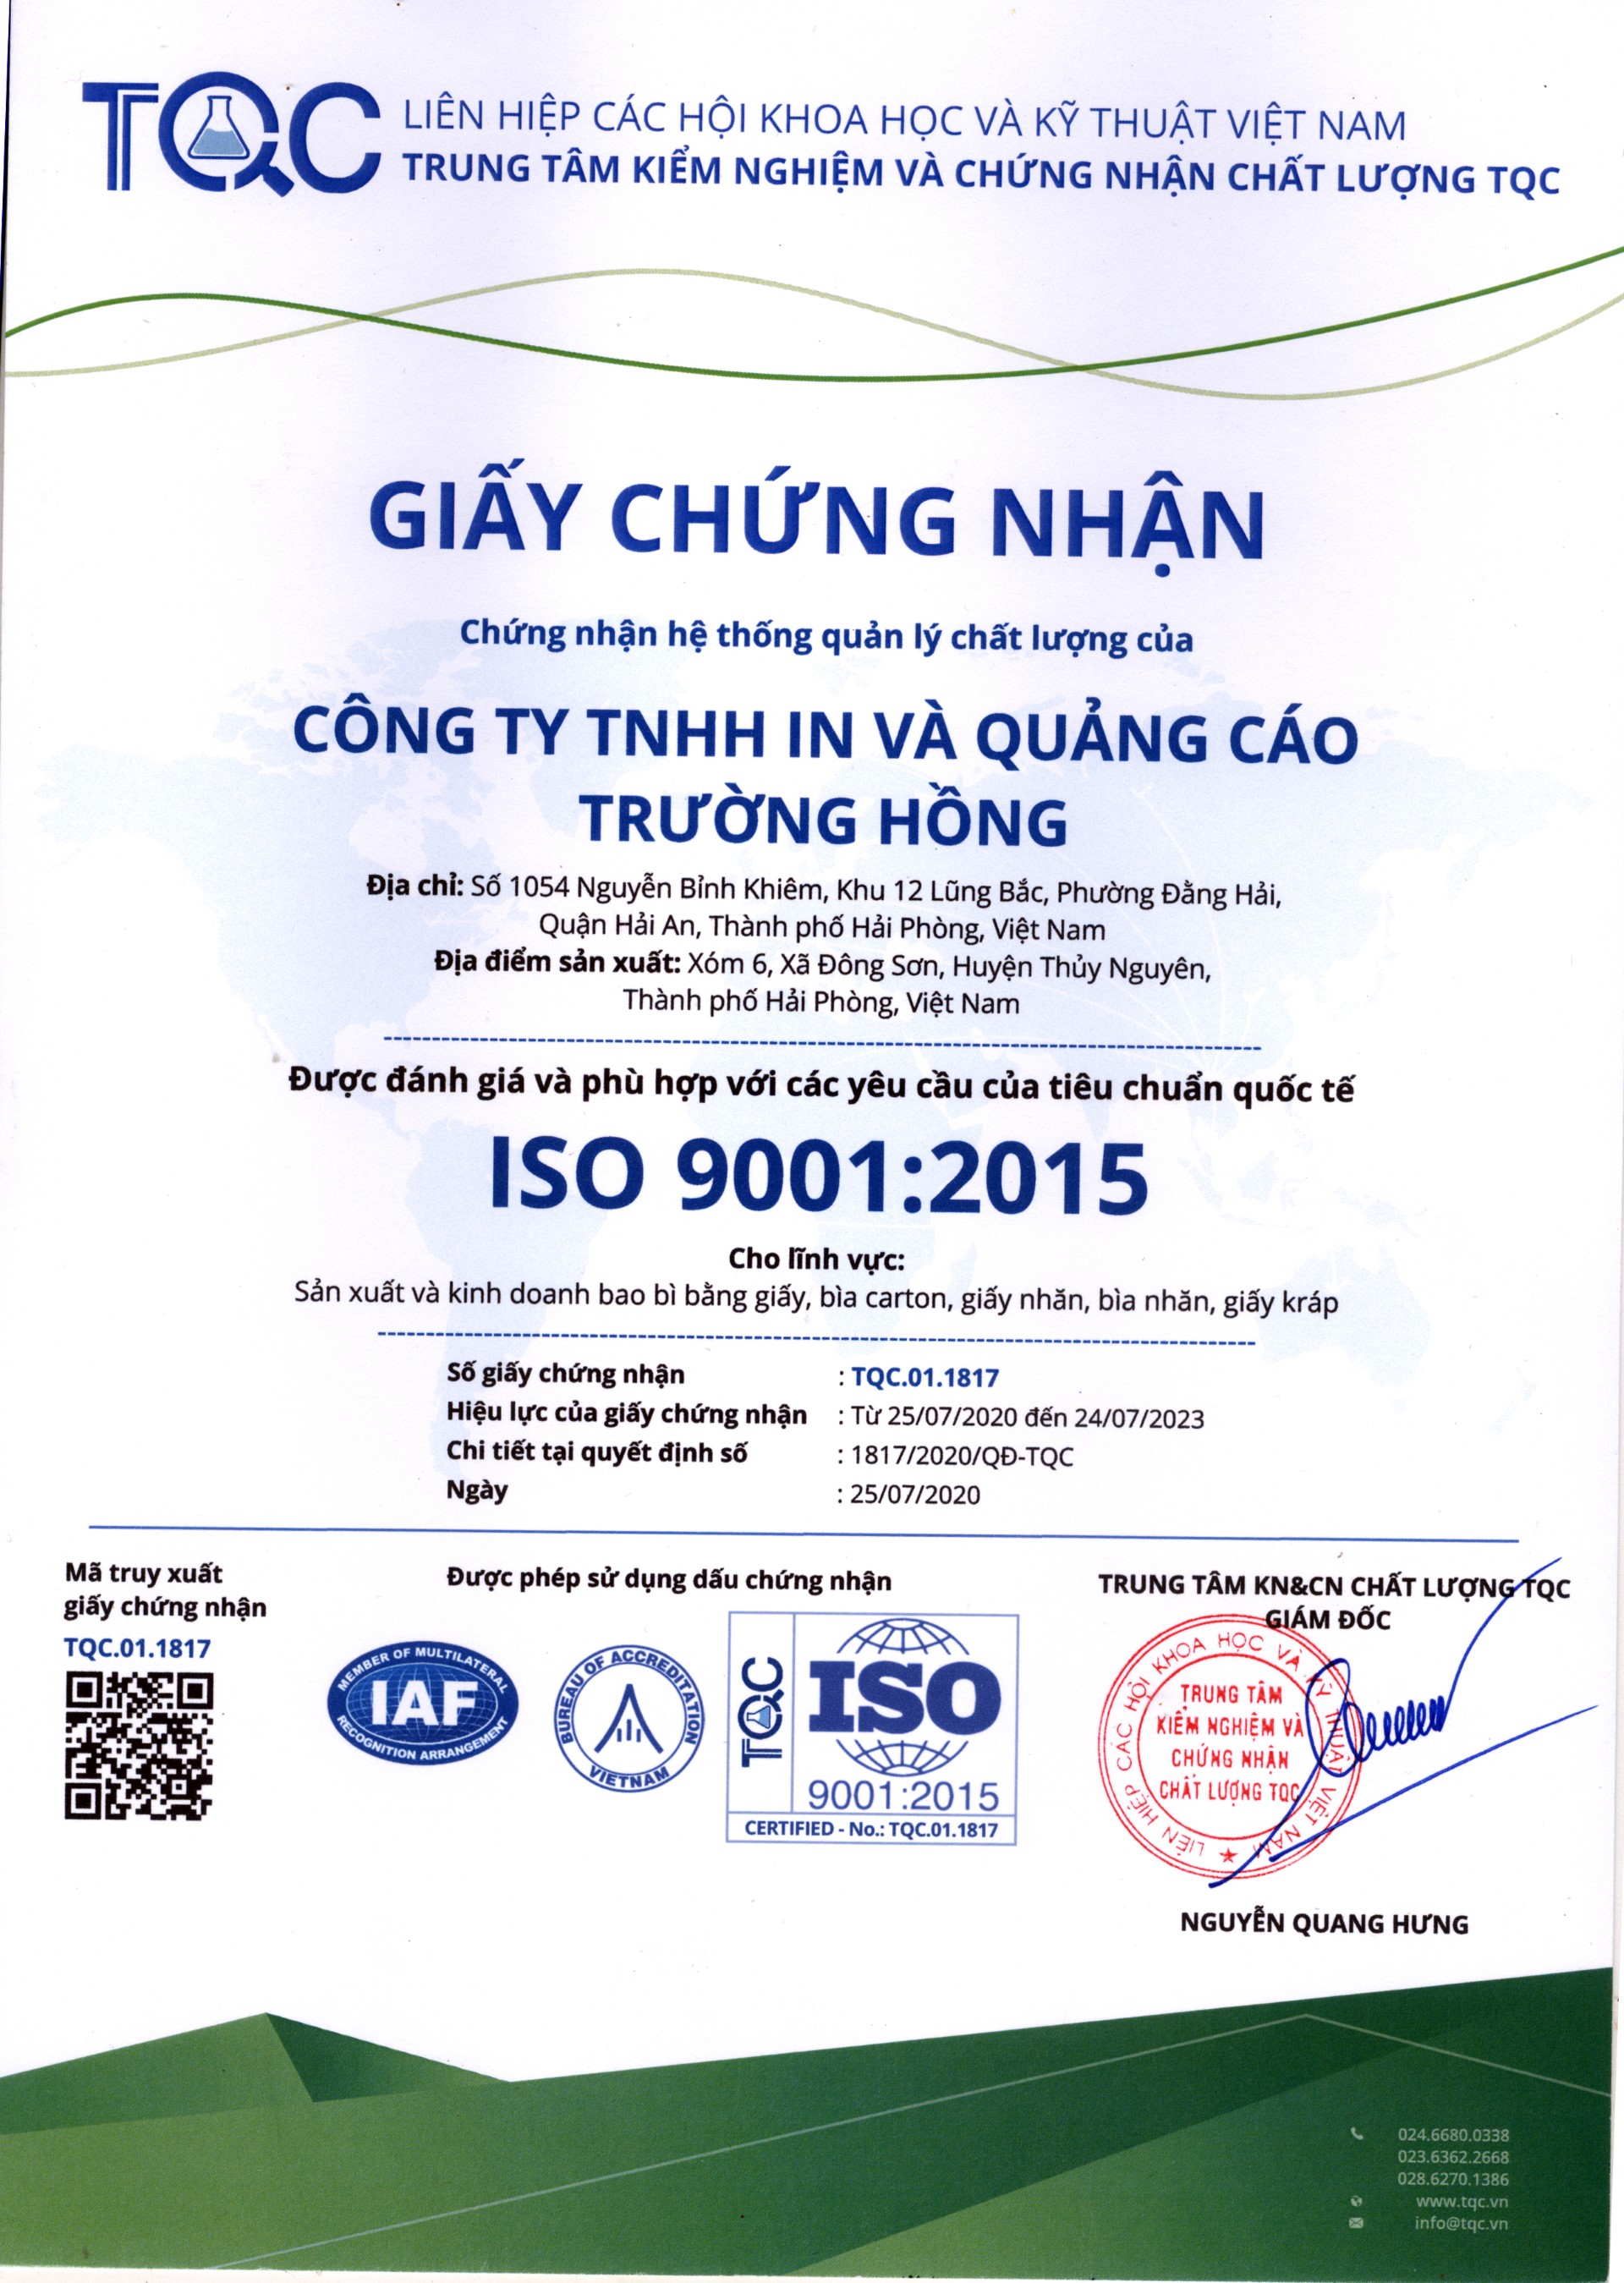 Giấy chứng nhận ISO  9001:2015 - In ấn Trường Hồng - Công Ty TNHH In Và Quảng Cáo Trường Hồng